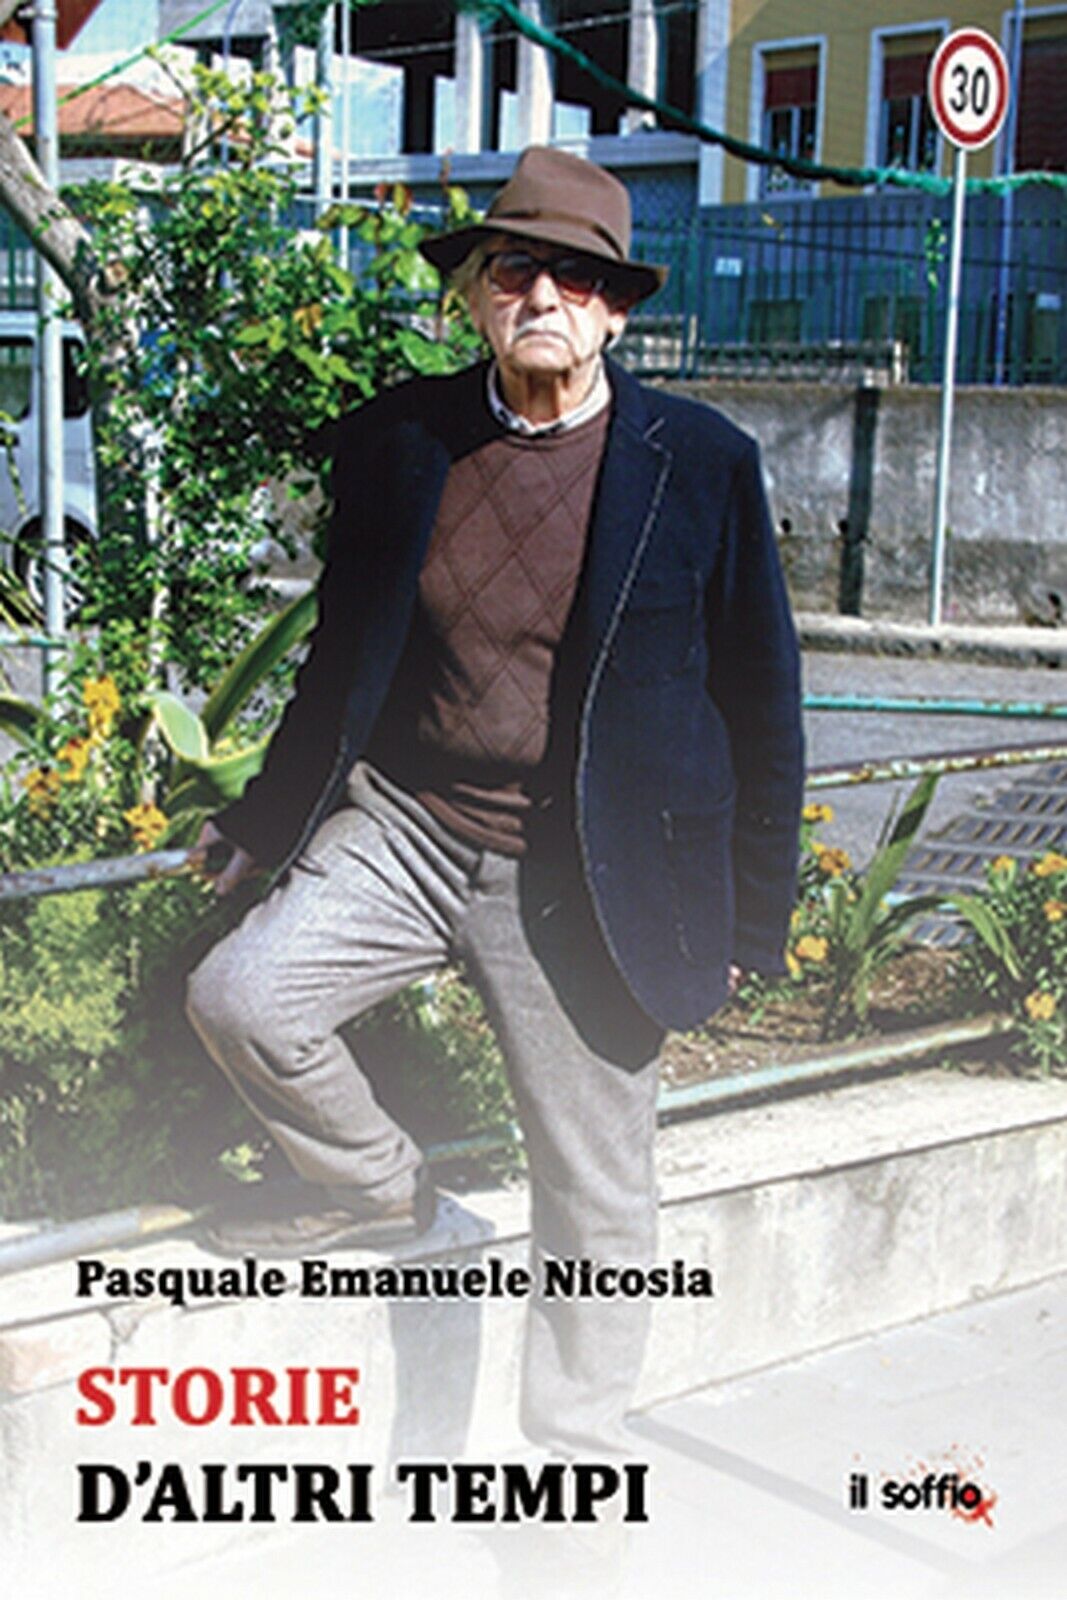 Storie d'altri tempi  di Pasquale E. Nicosia,  Il Soffio Edizioni